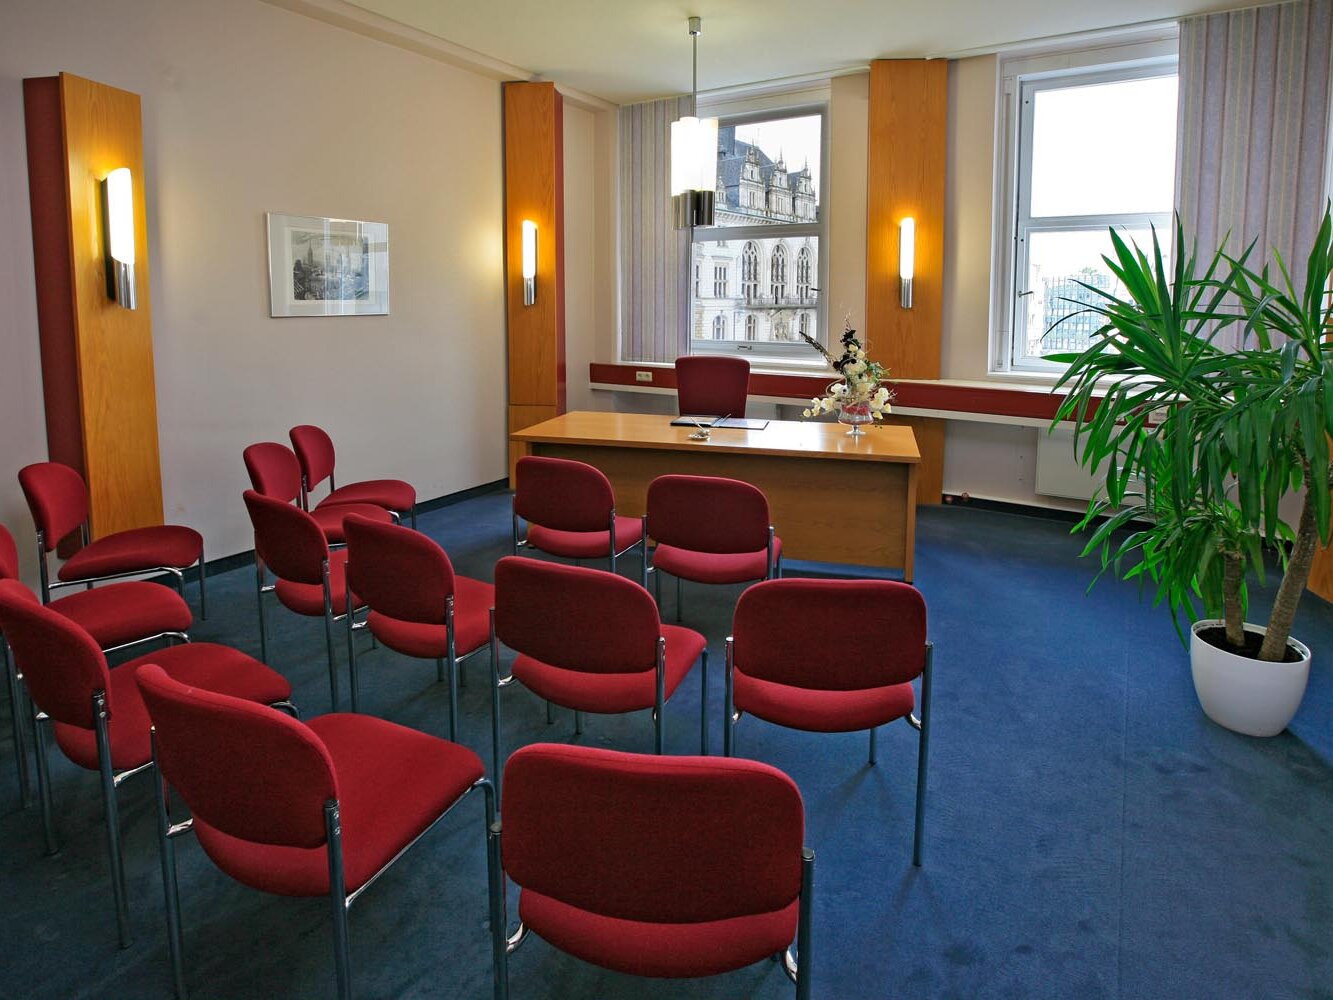 Blick in das Eheschließungszimmer im Ratshof, 13 leere rote Stühle, blauer Teppich, rechts eine Grünpflanze